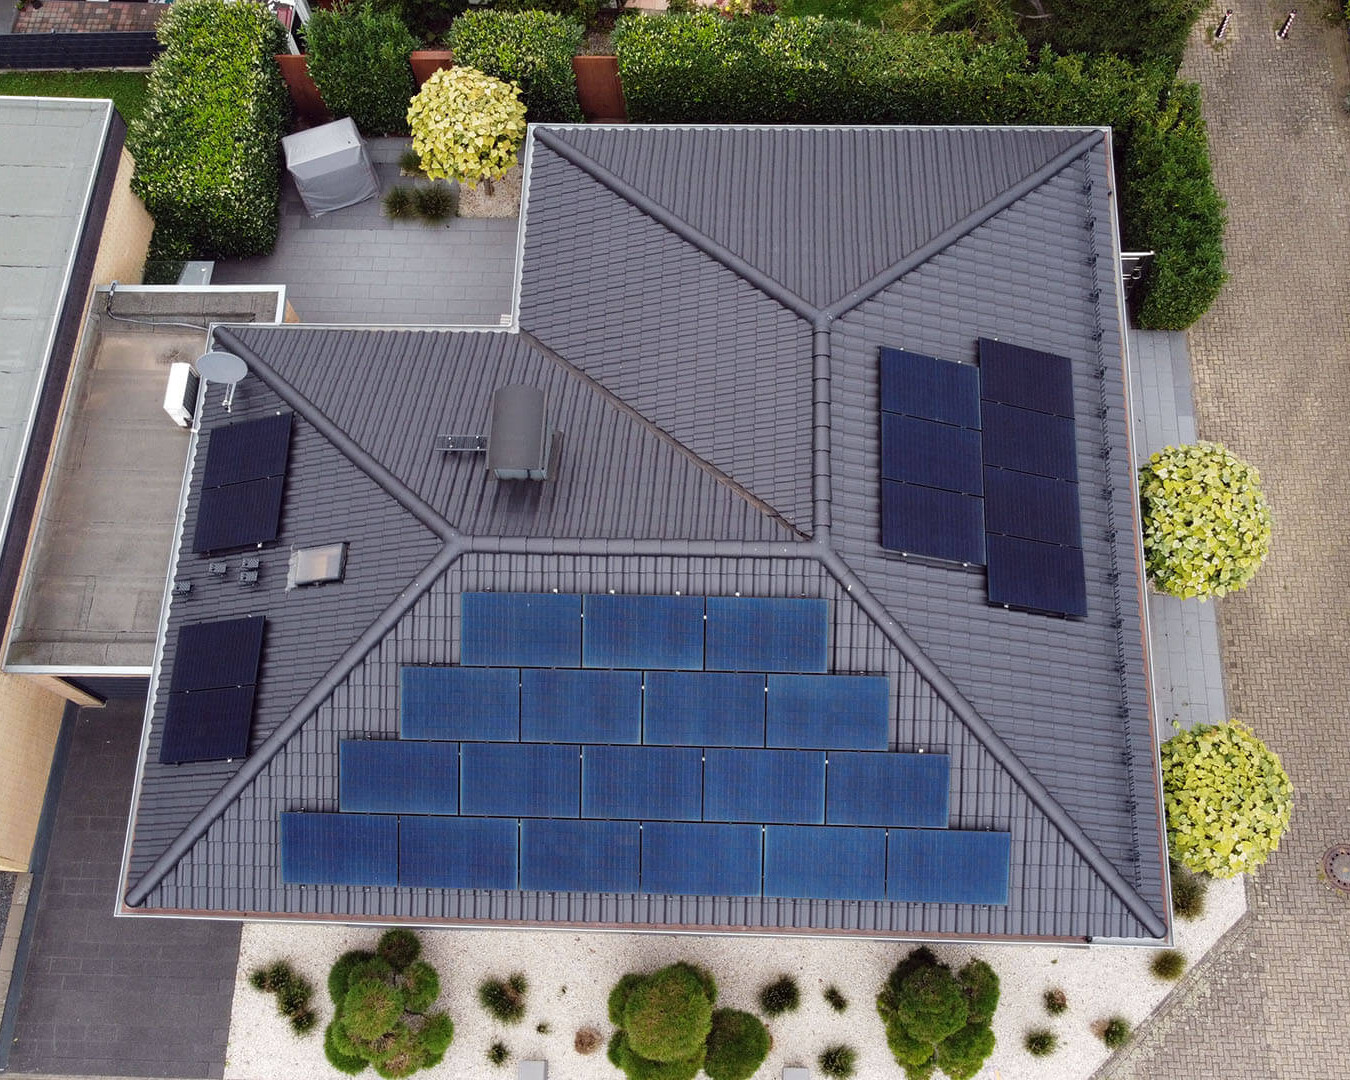 Private Immobilie mit Photovoltaik Anlage zur Gewinnung von Solarstrom